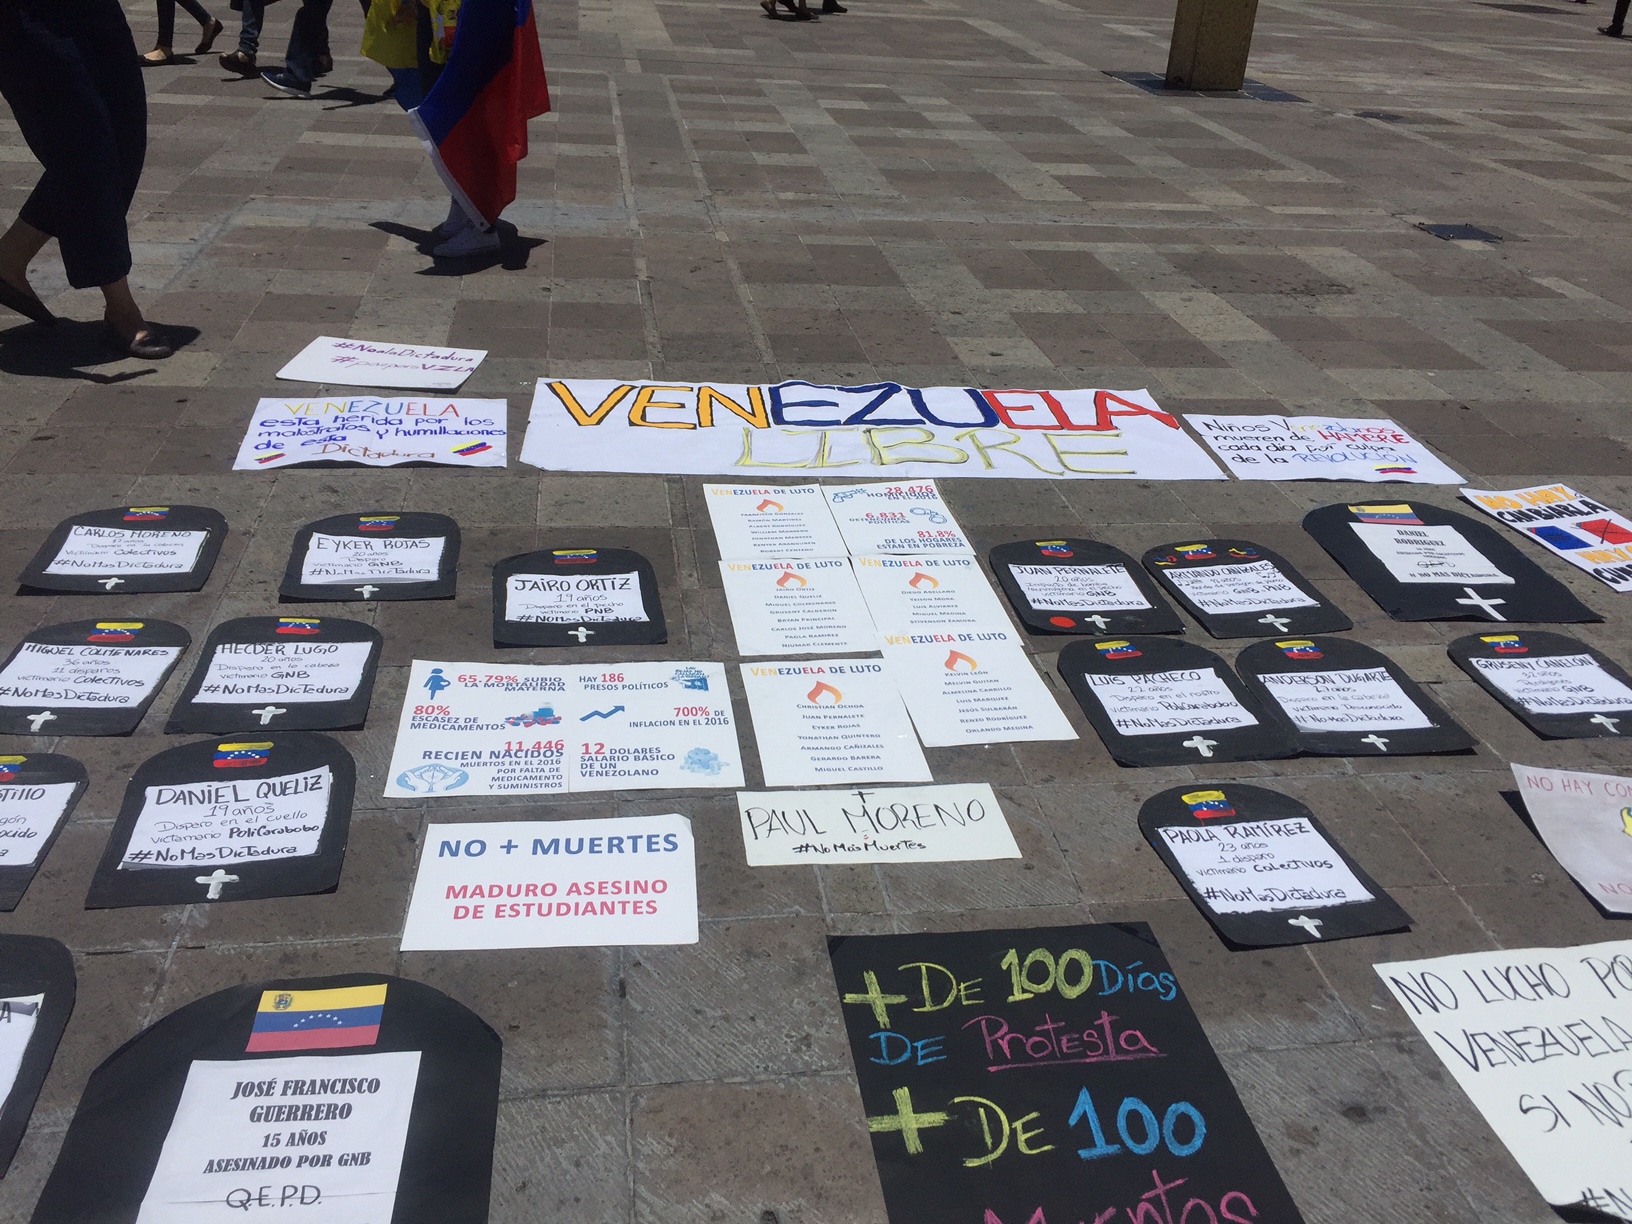  Venezolanos en Querétaro protestan contra constituyente de Maduro